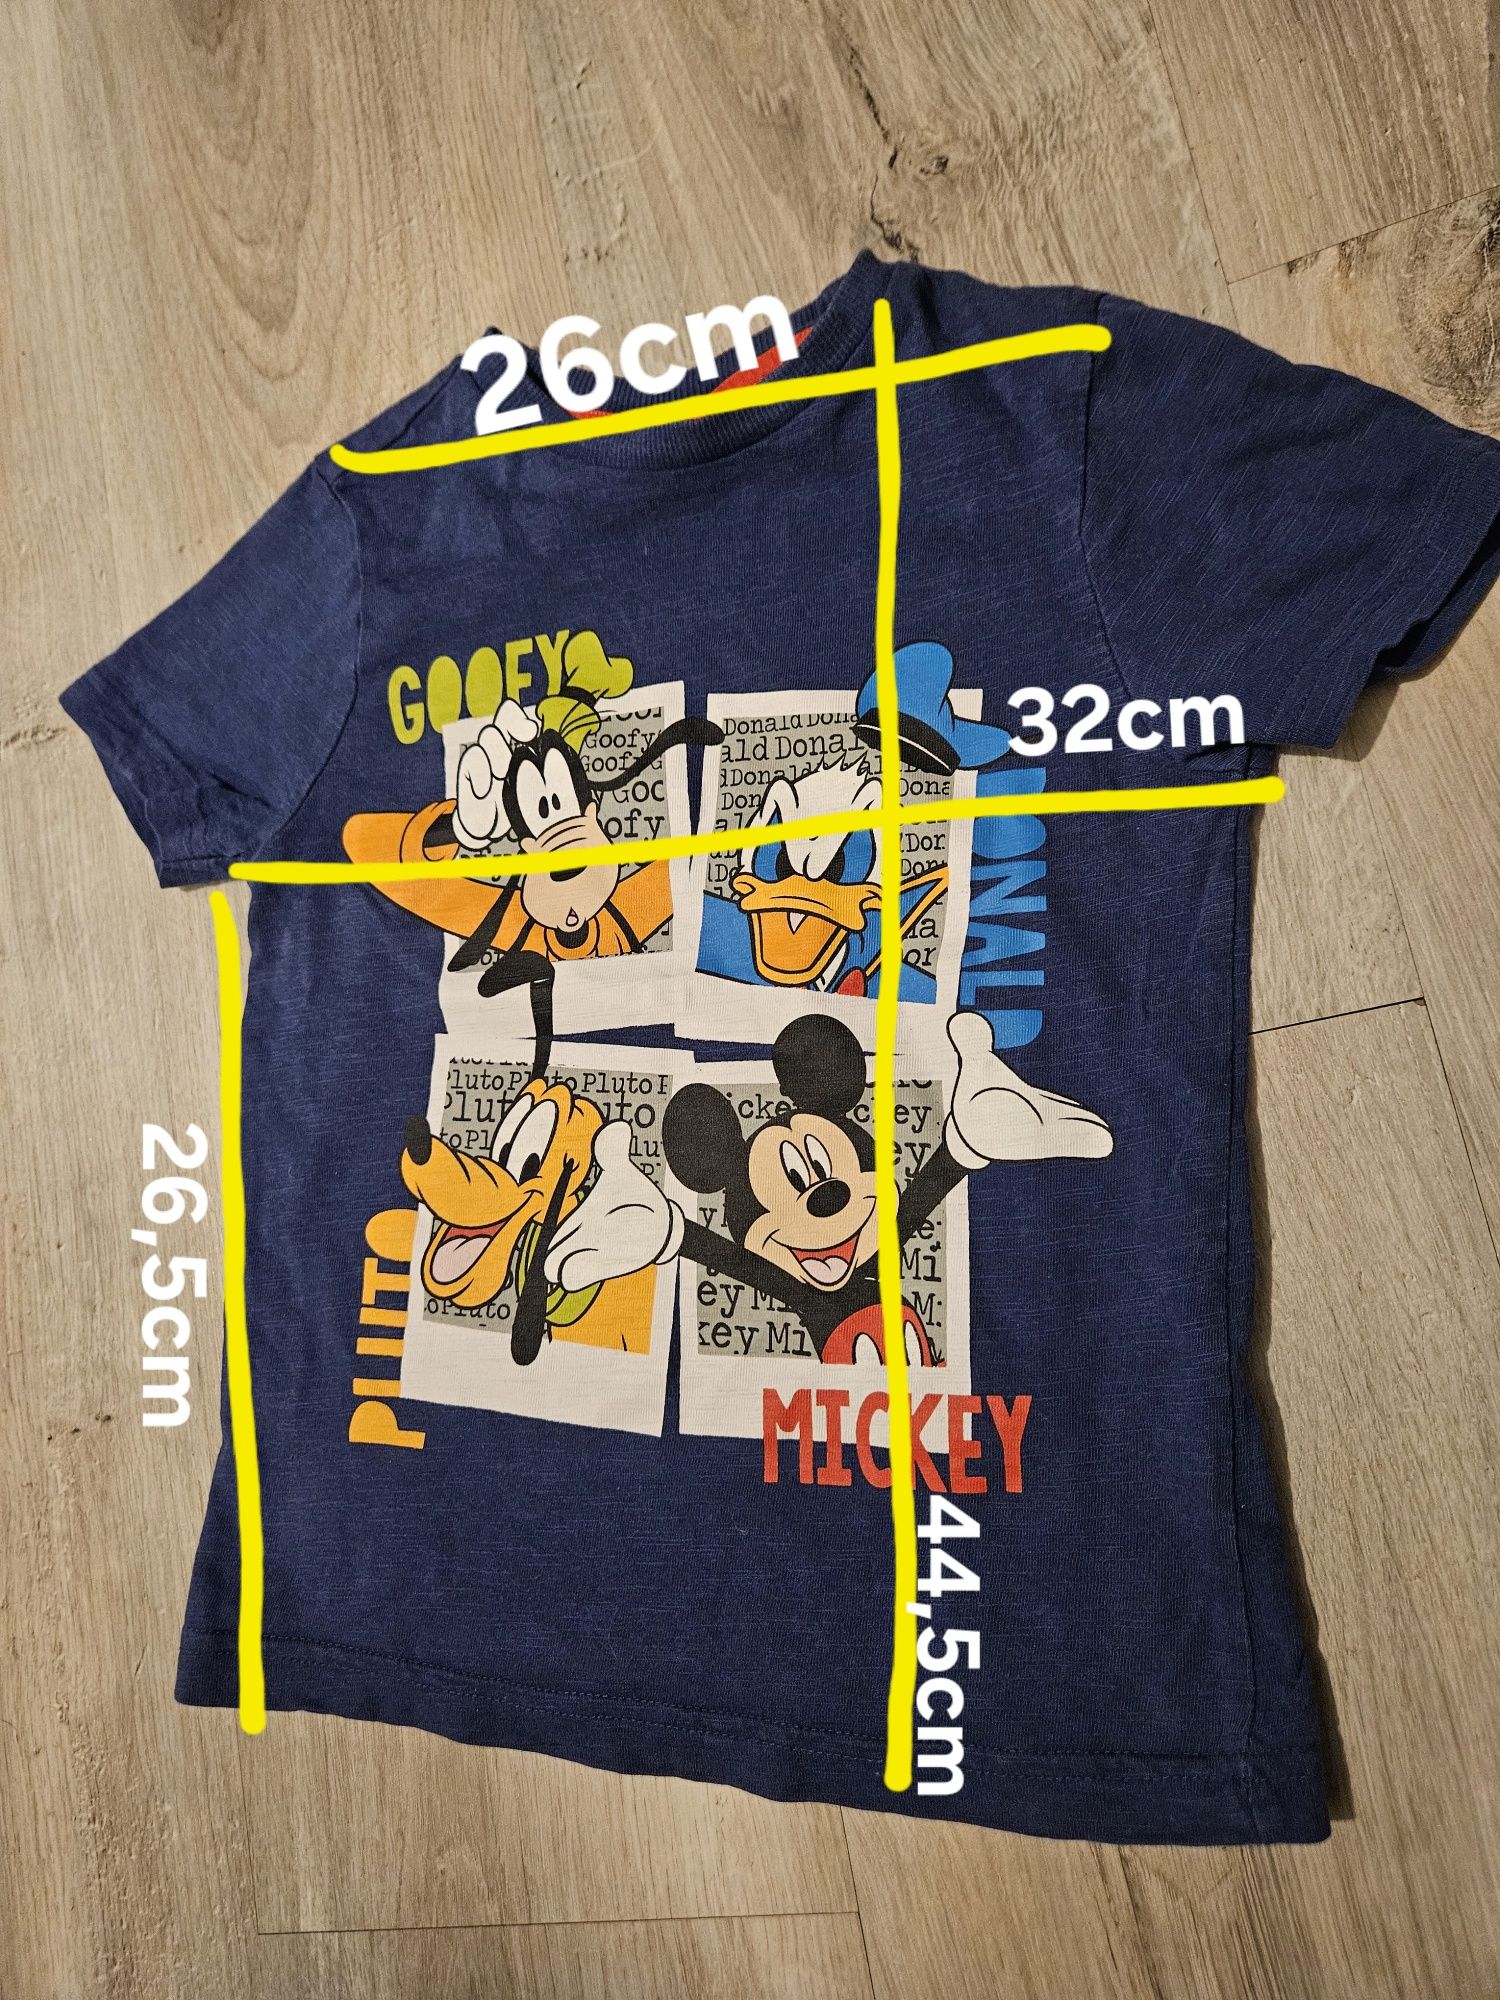 Chłopięcy t-shirt Disney Mickey Mouse.  Rozmiar na 4-5 lat